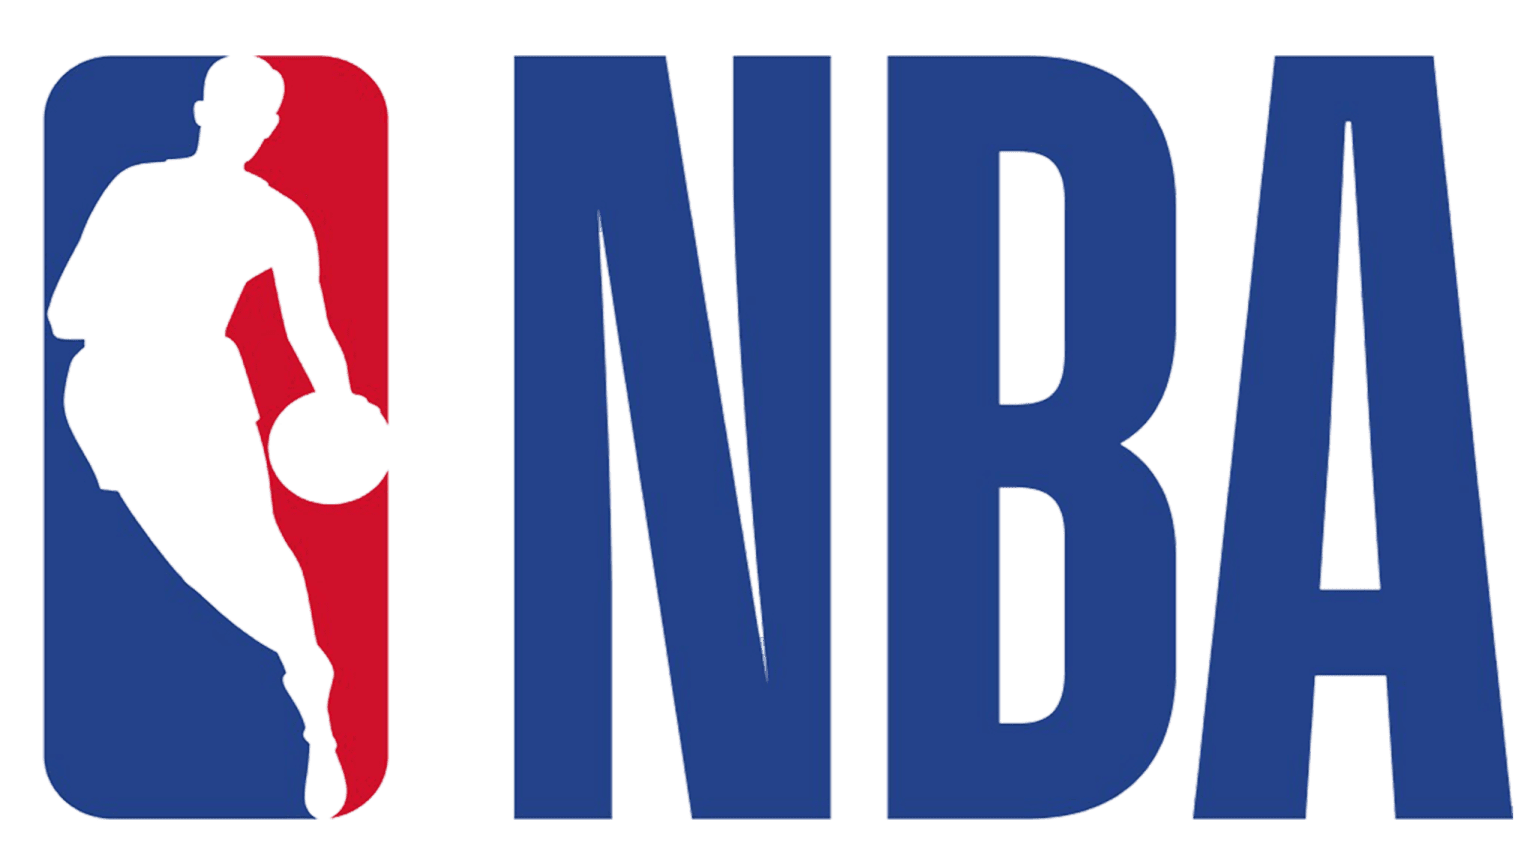 NBA-logo-cropped-1536x864-1